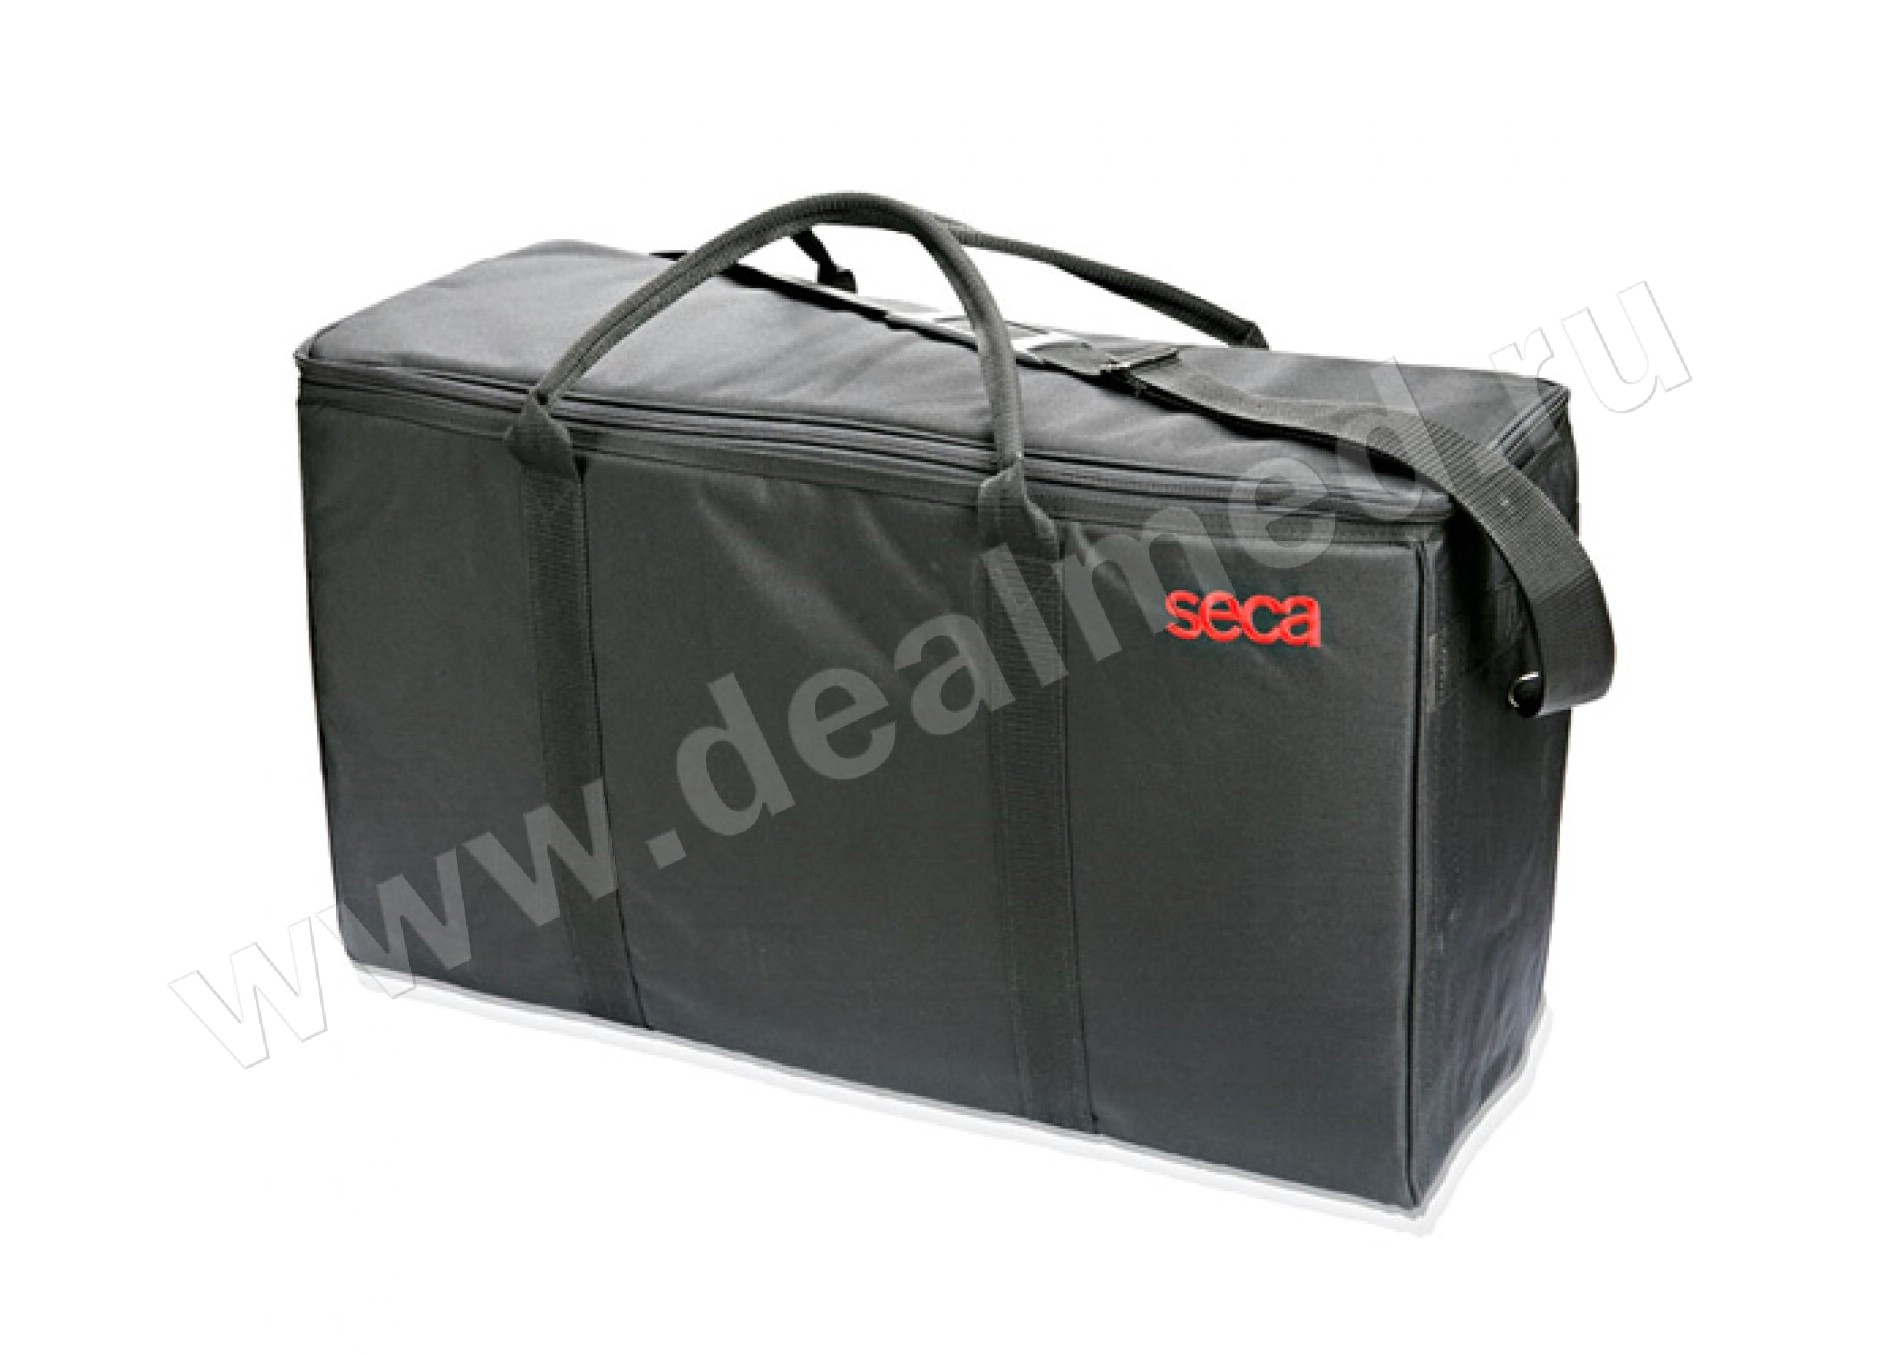 Транспортировочная сумка SECA 414 для детских весов seca 383 и seca 354, в комбинации с seca 417, Германия